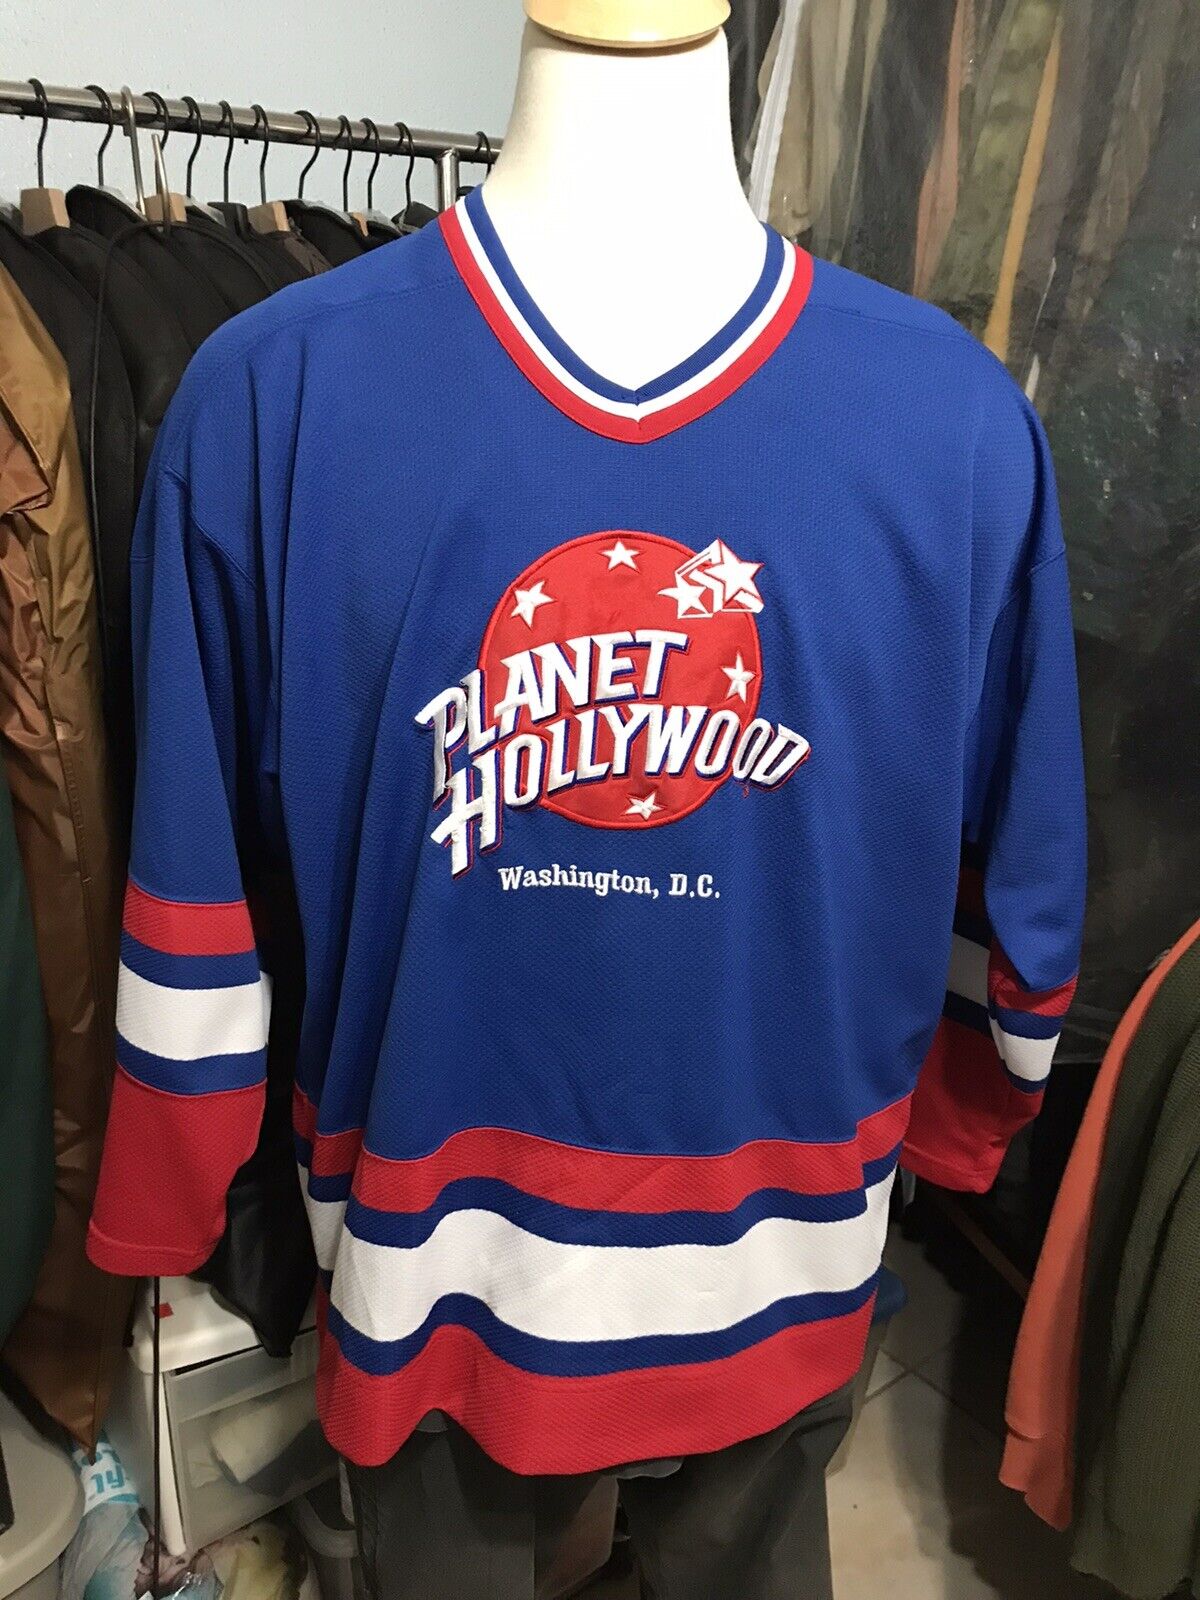 Vintage 1990s Planet Hollywood Washington D.C. Hockey Jersey Sz XL J2